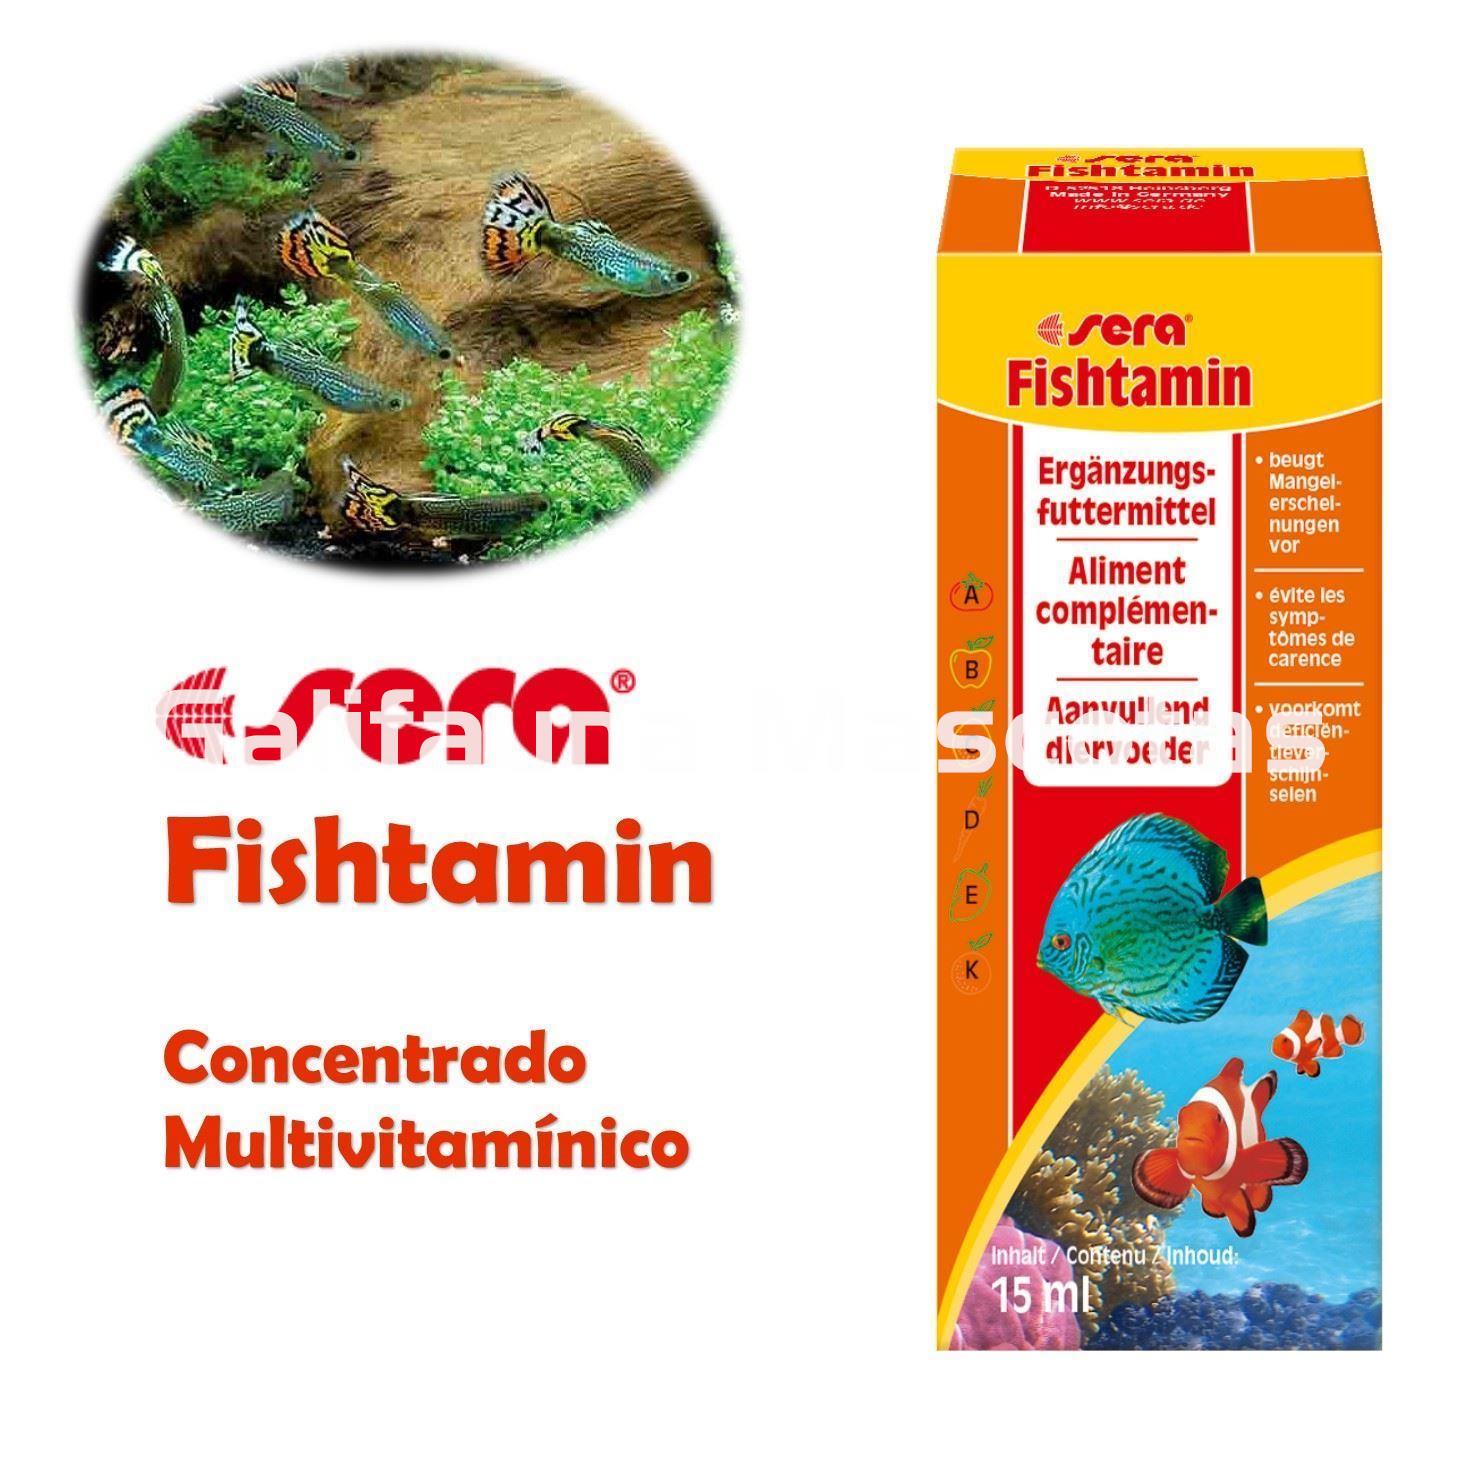 SERA fishtamin. Vitaminas para nuestros peces. - Imagen 1